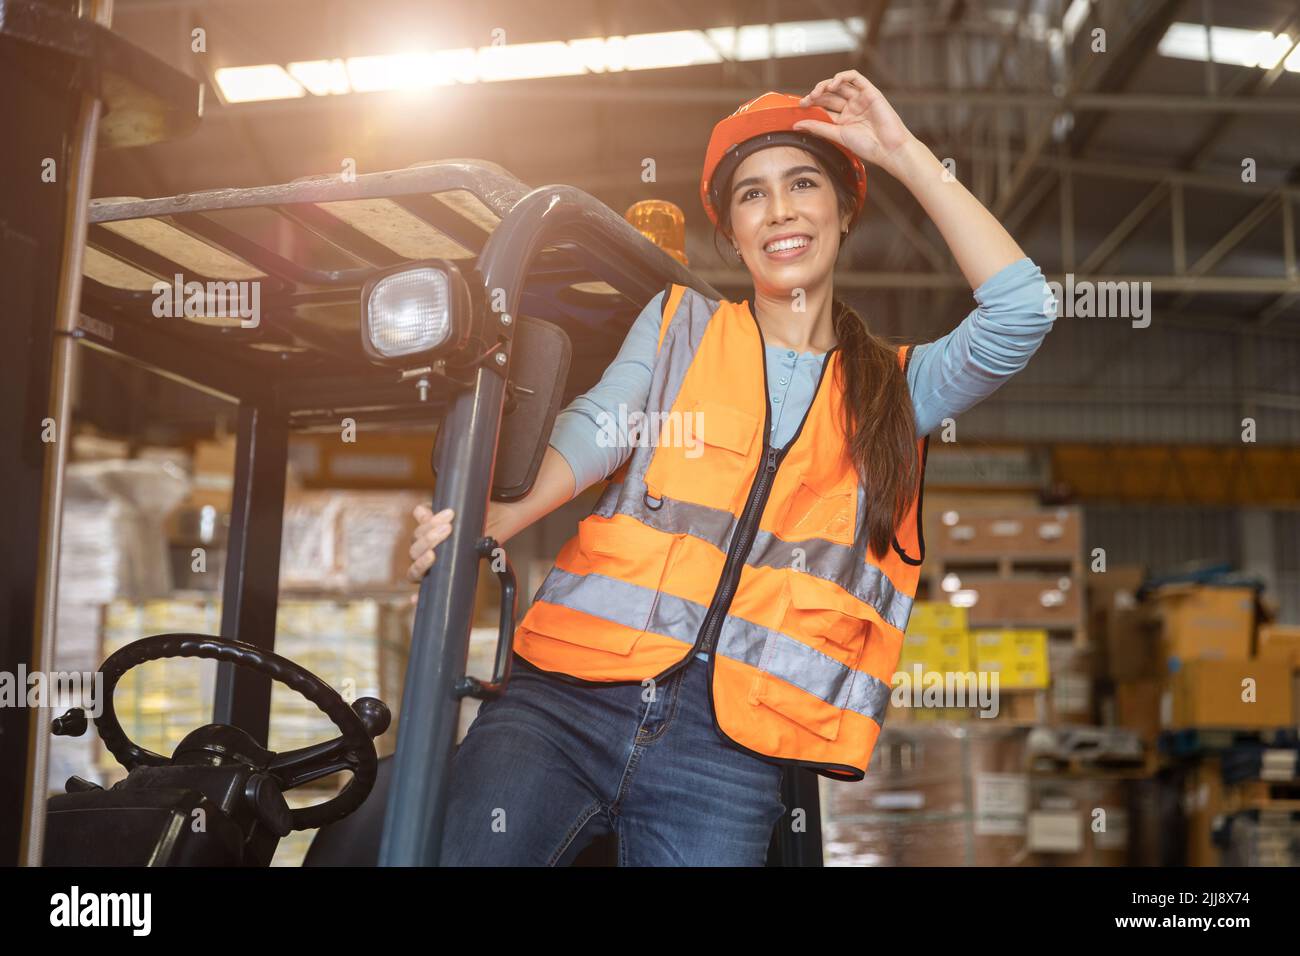 Femme heureuse employée de l'entrepôt chauffeur de chariot élévateur sourire heureux appréciez les travailleurs asiatiques. Banque D'Images